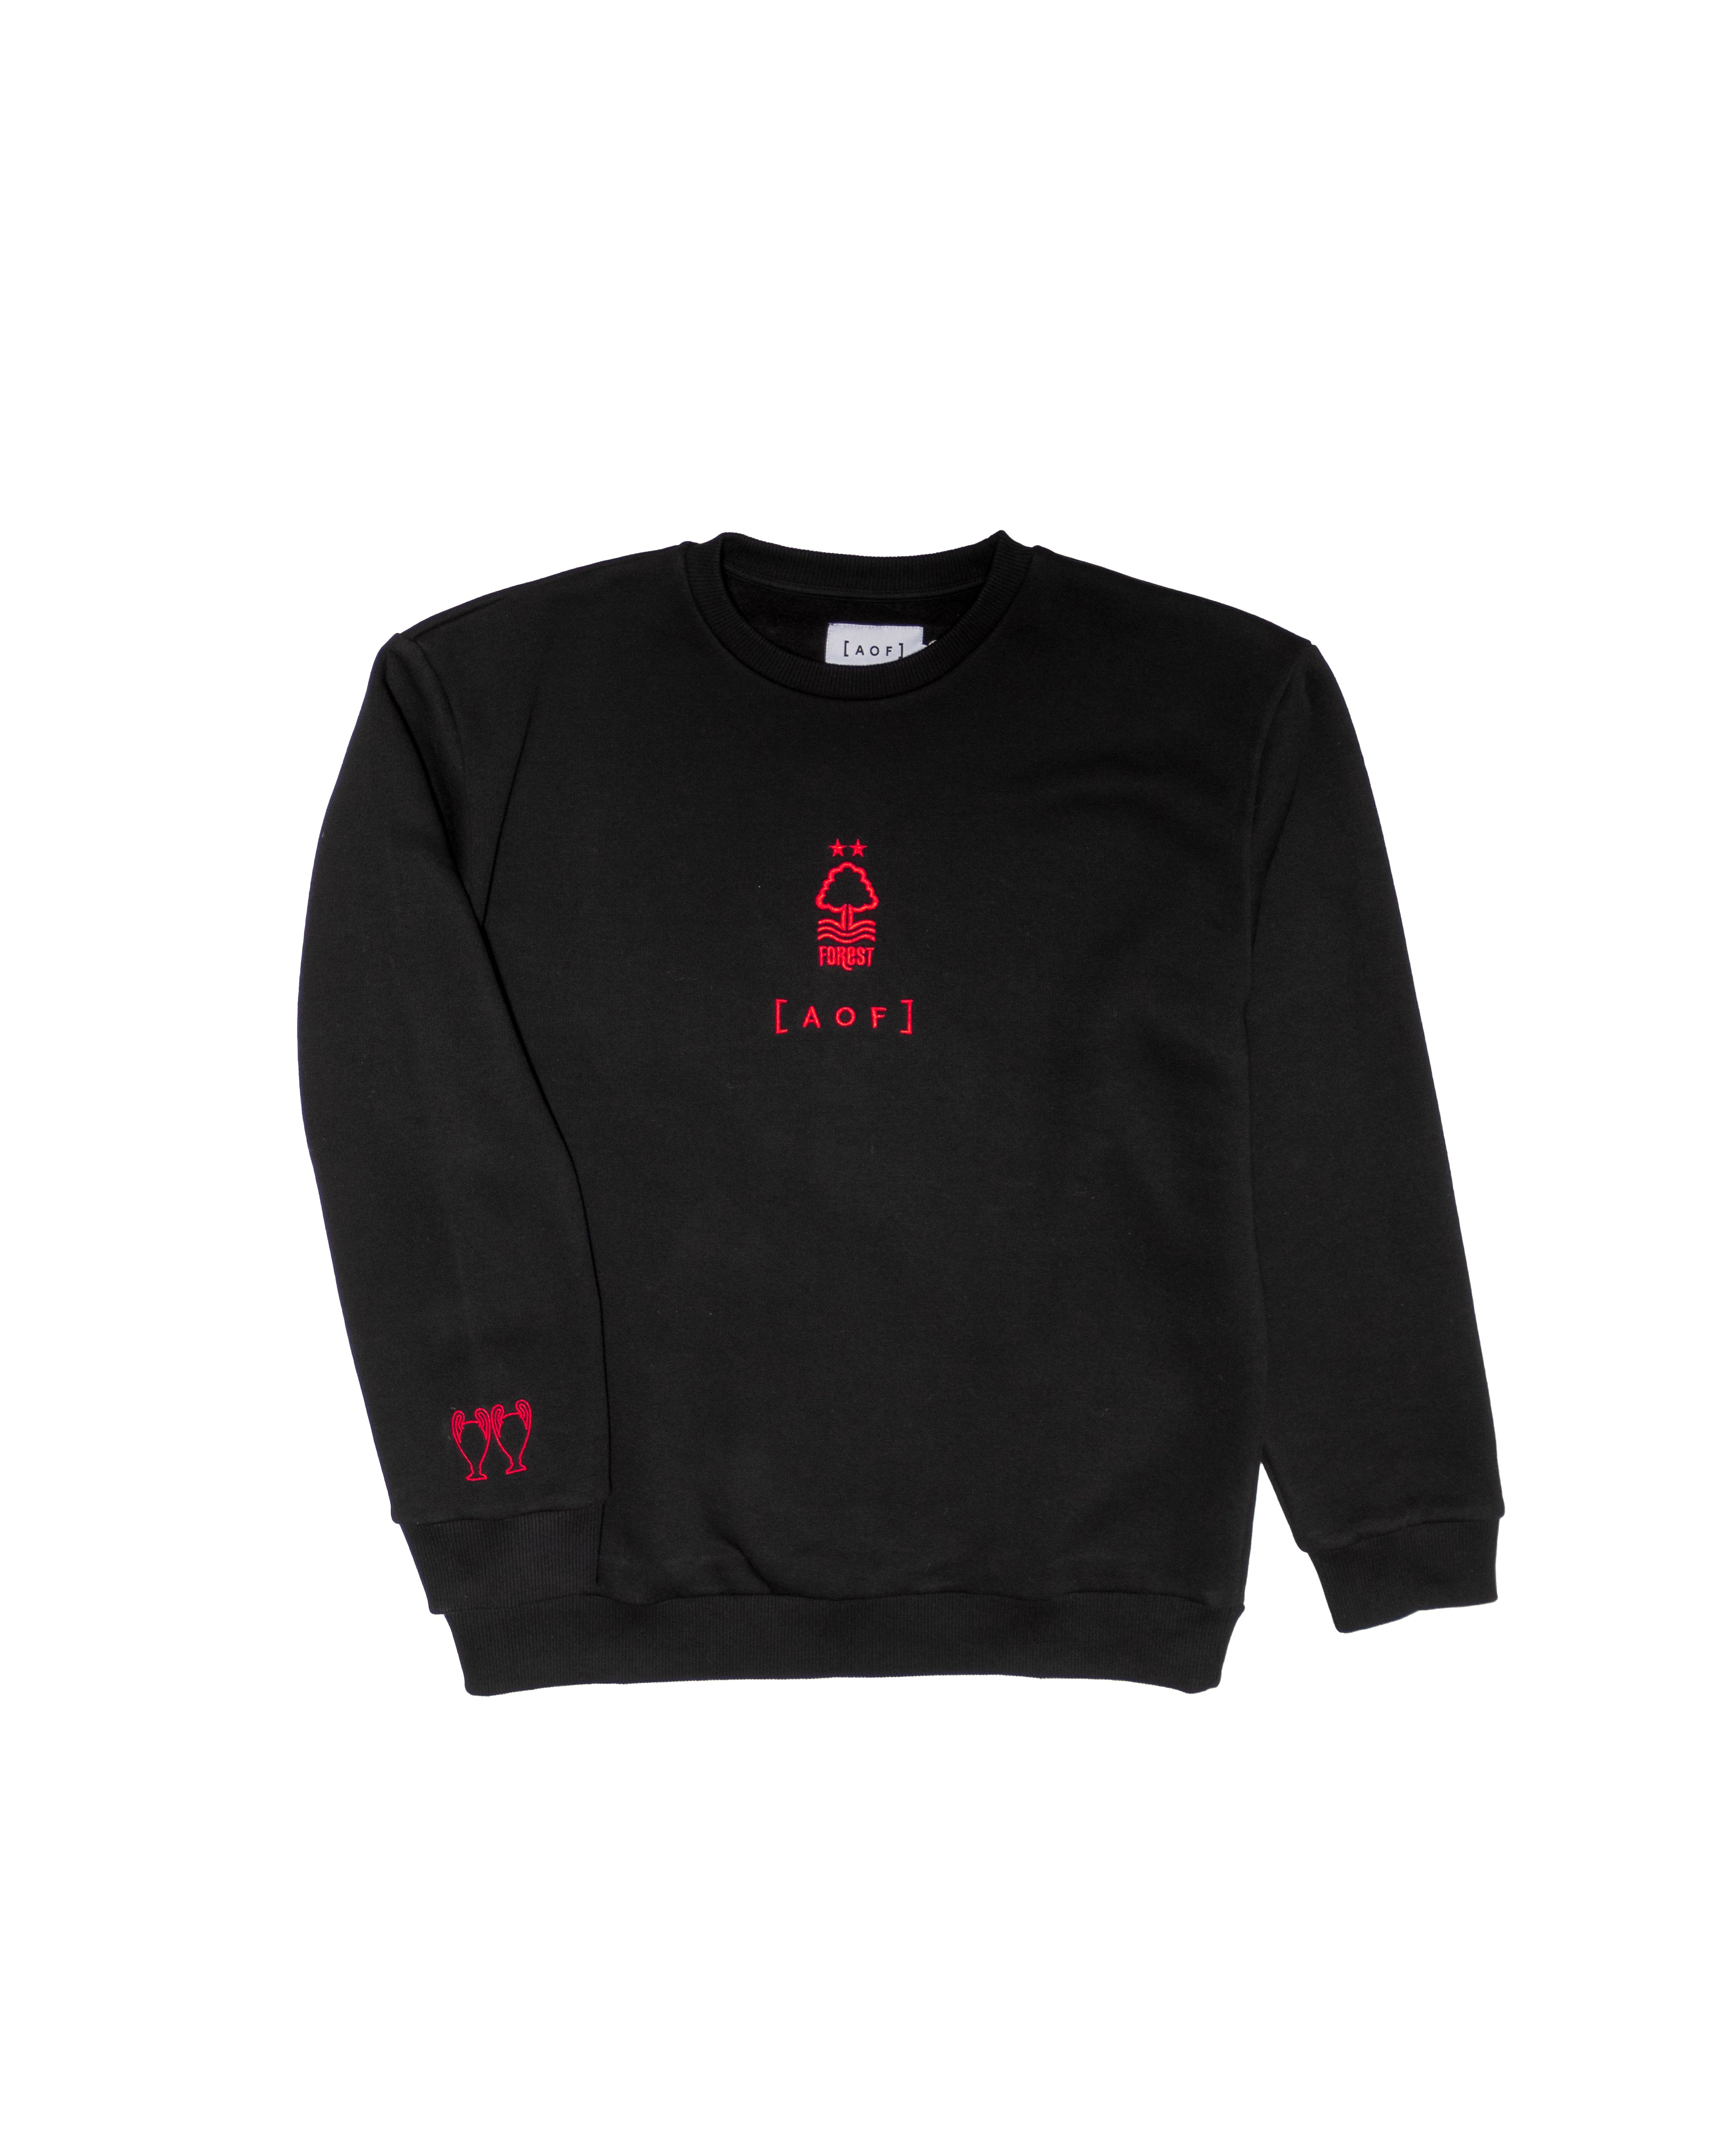 AOF X Forest Sweatshirt - Black